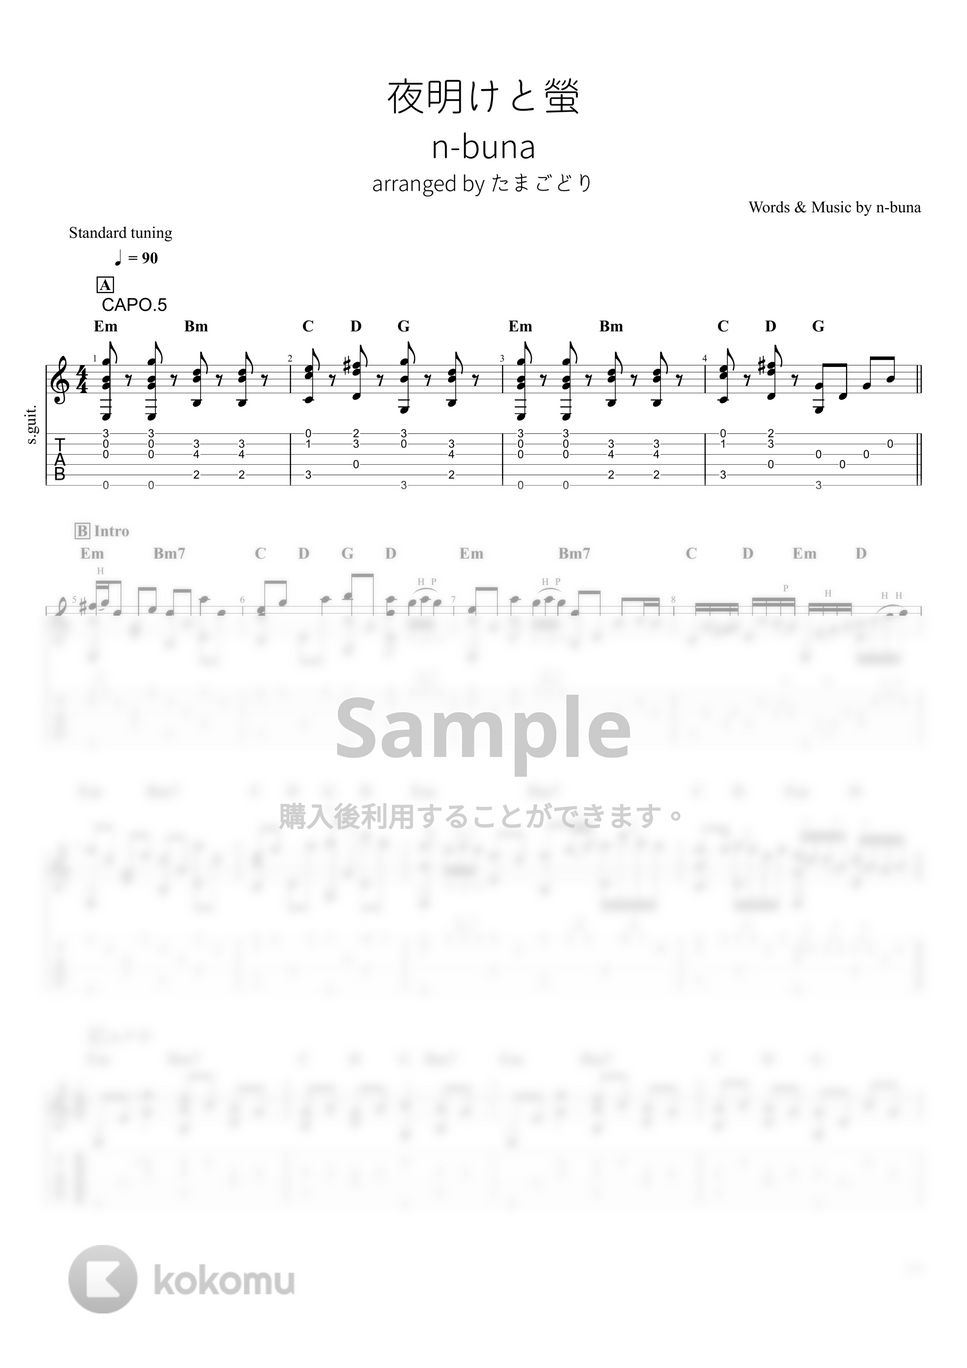 n-buna - 夜明けと蛍 (ソロギター) by たまごどり